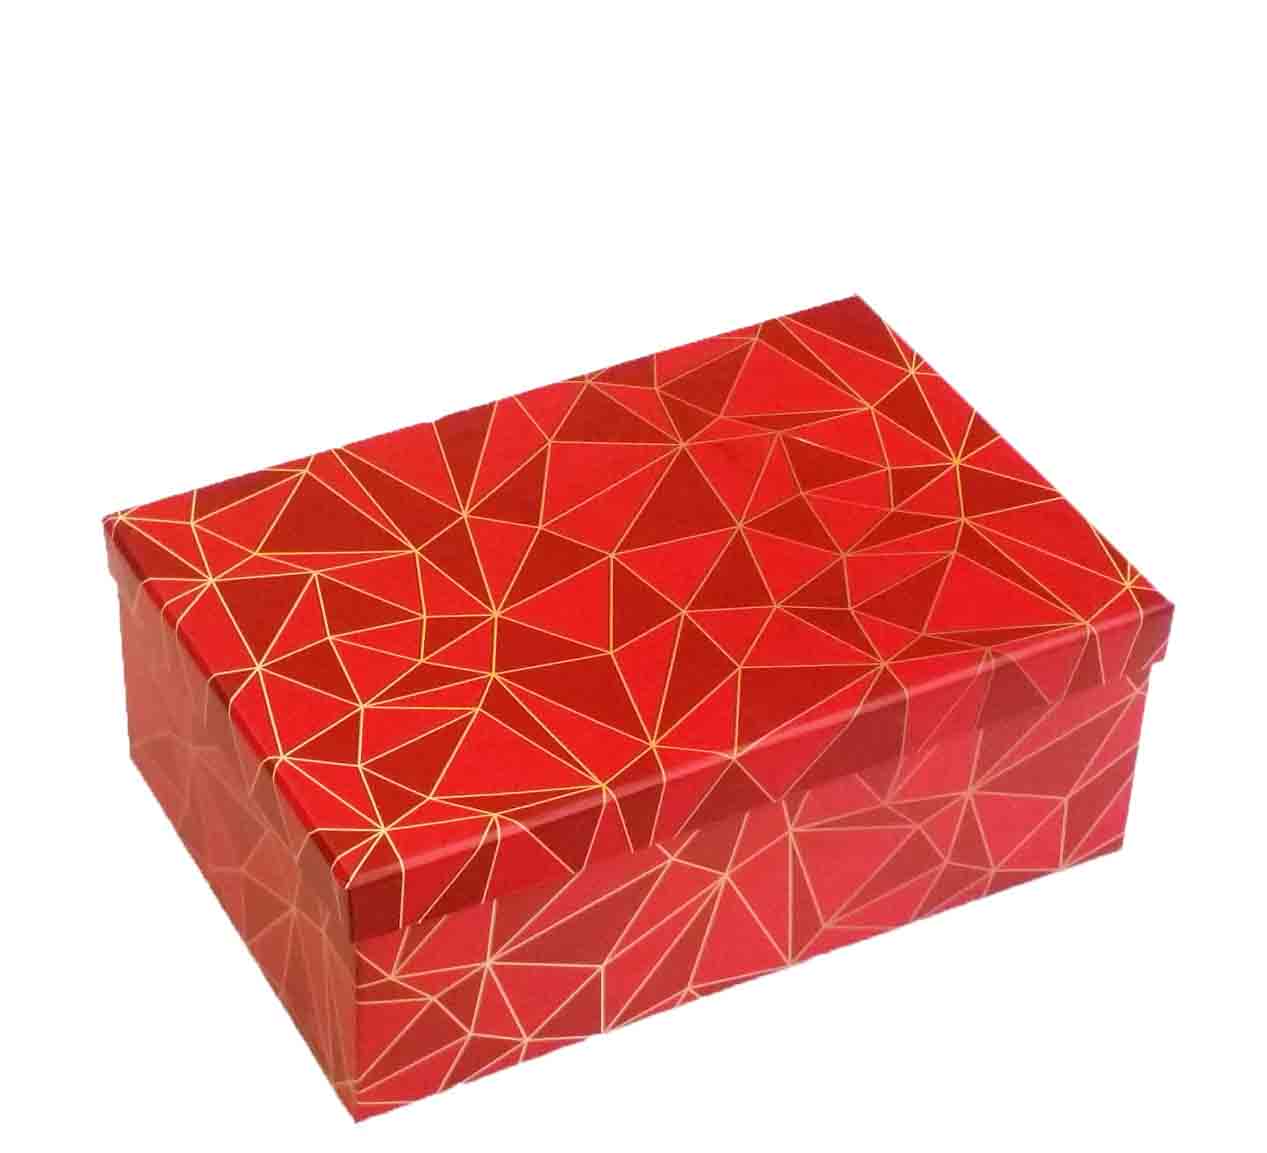 X7695 - Rectangular Gift Boxes - 10.95 set of 5